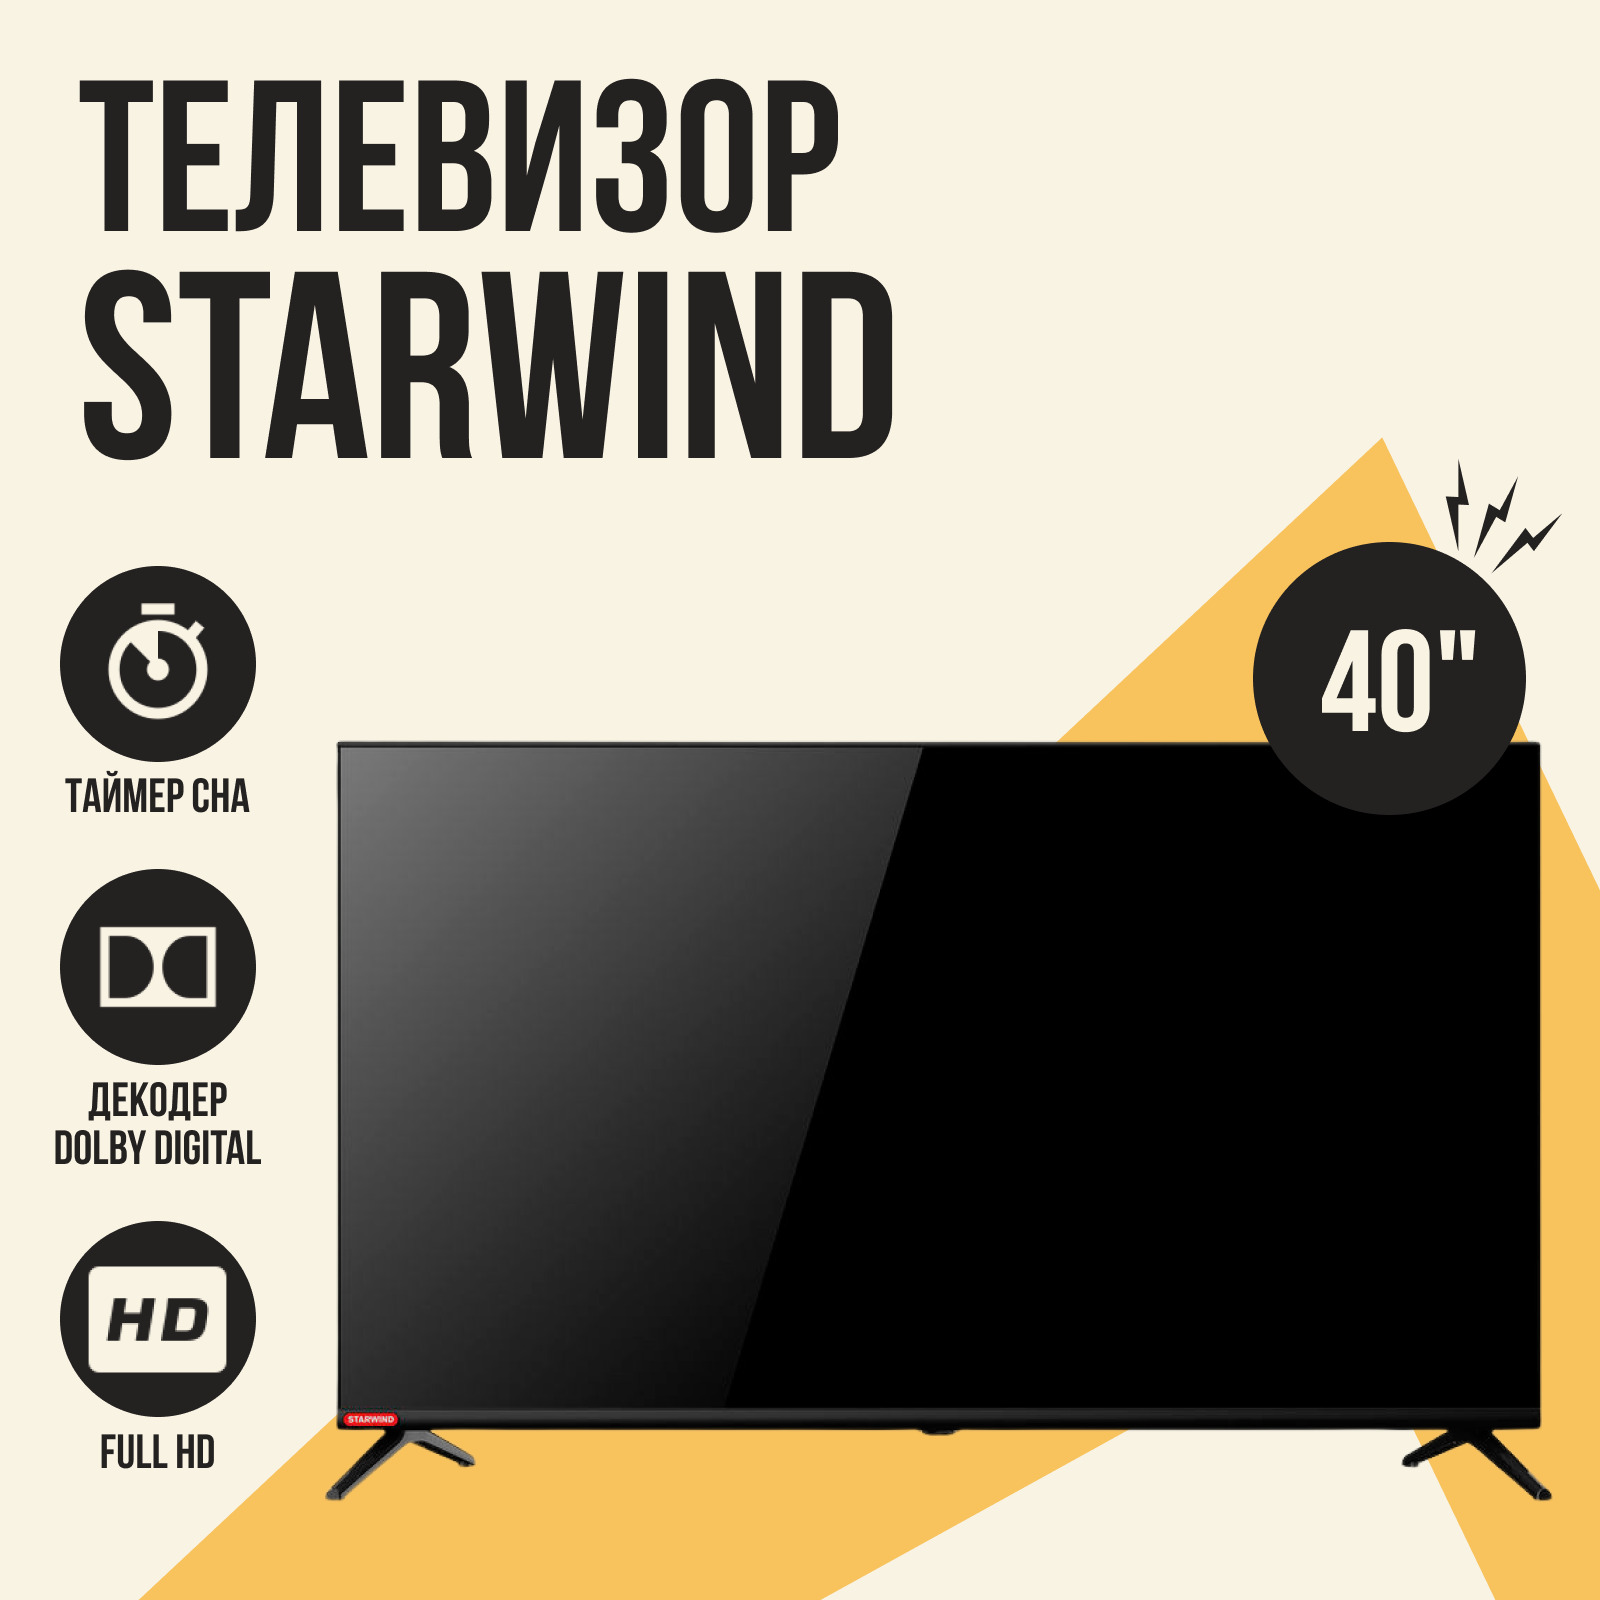 Телевизор starwind отзывы. Скидки на телевизоры. Телевизор с интернетом. Телевизор СТАРВИНД 58 дюймов отзывы. Ножки от телевизора СТАРВИНД.